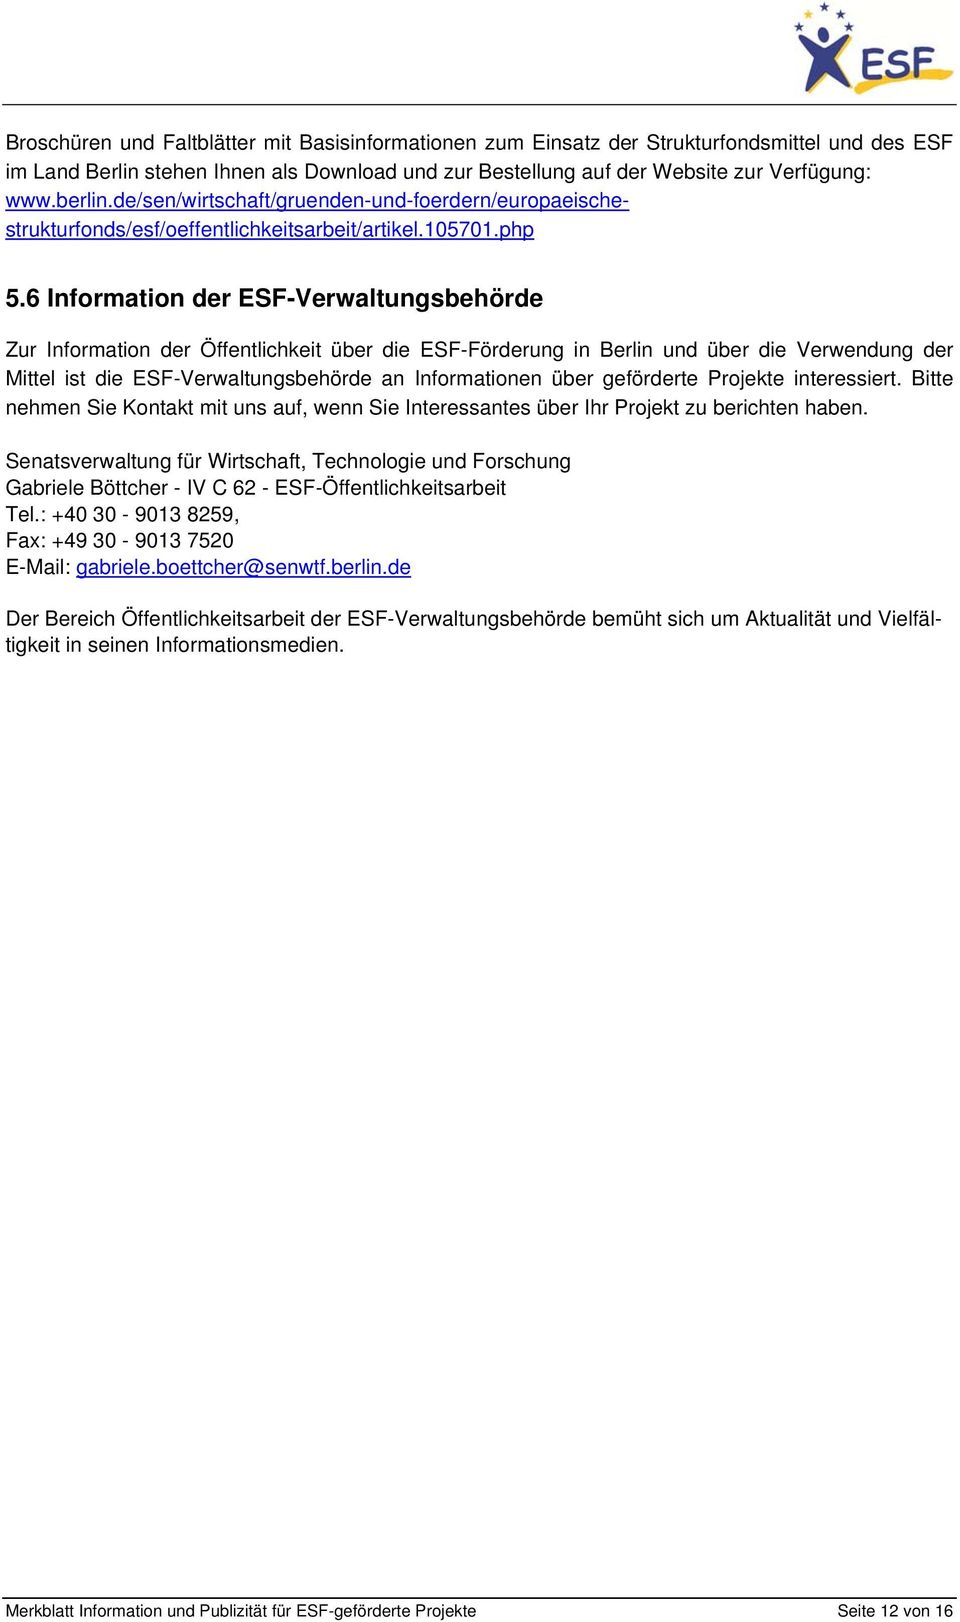 6 Information der ESF-Verwaltungsbehörde Zur Information der Öffentlichkeit über die ESF-Förderung in Berlin und über die Verwendung der Mittel ist die ESF-Verwaltungsbehörde an Informationen über